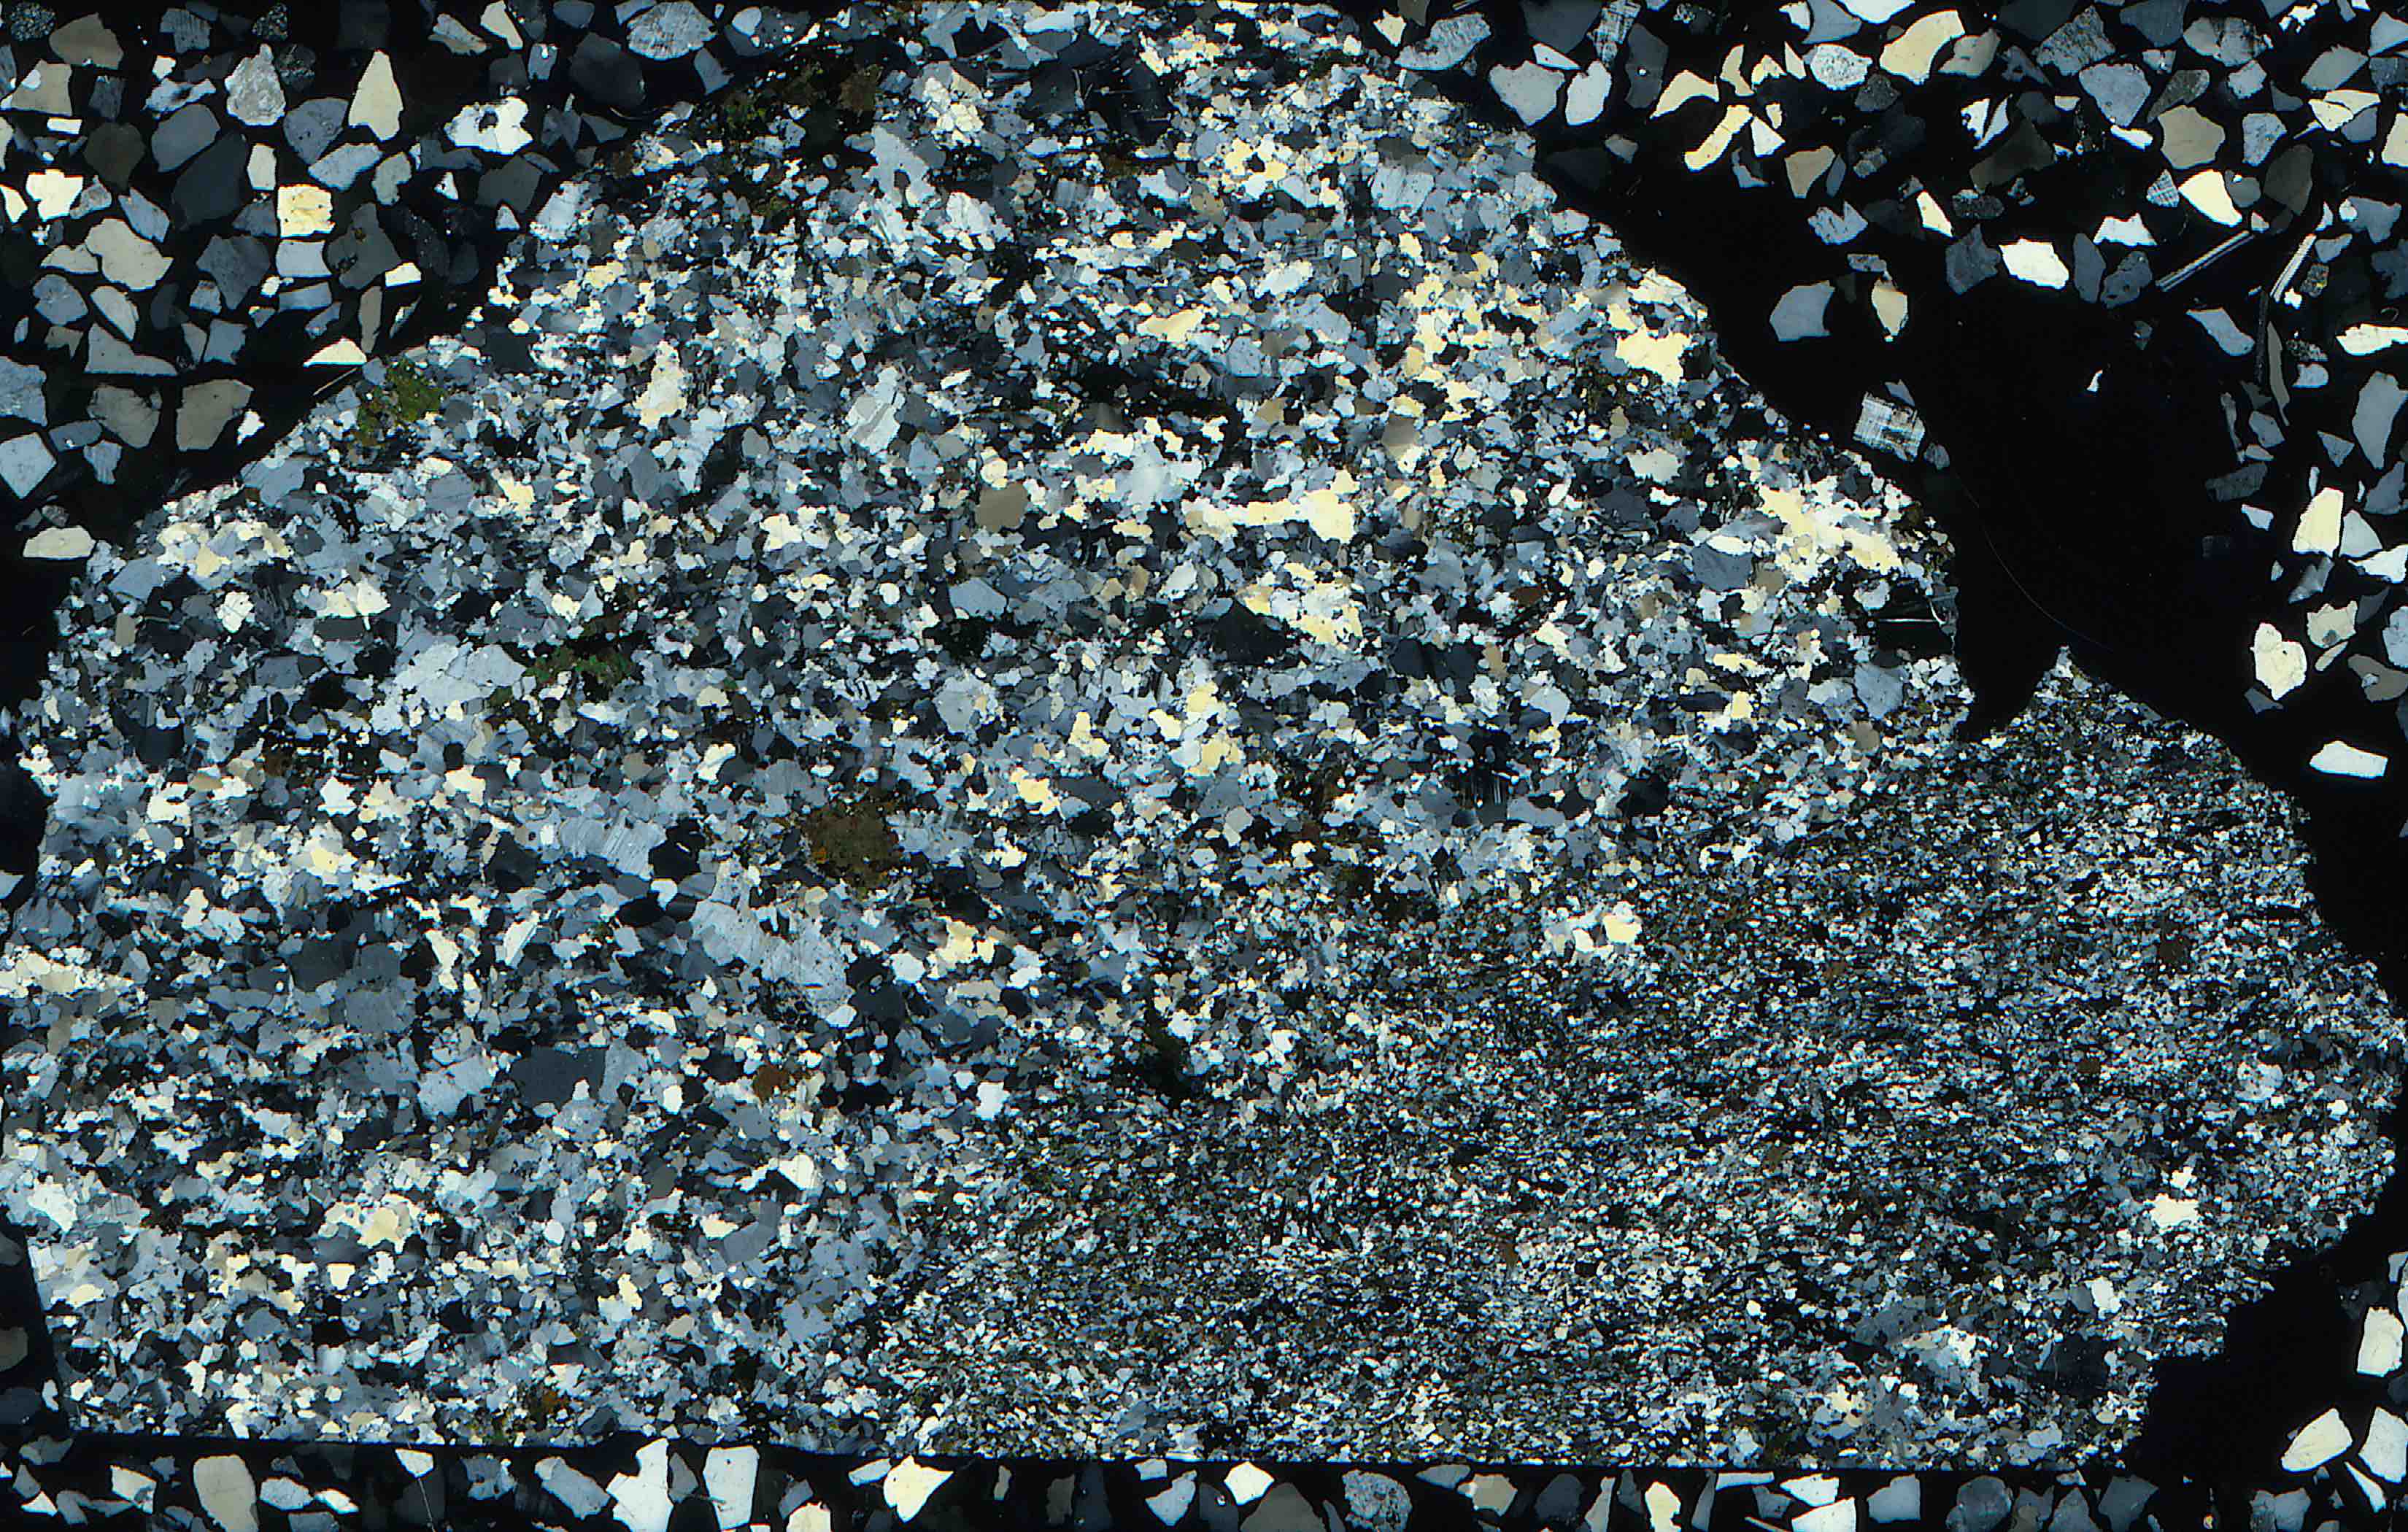 bafertisite in peralkaline granite